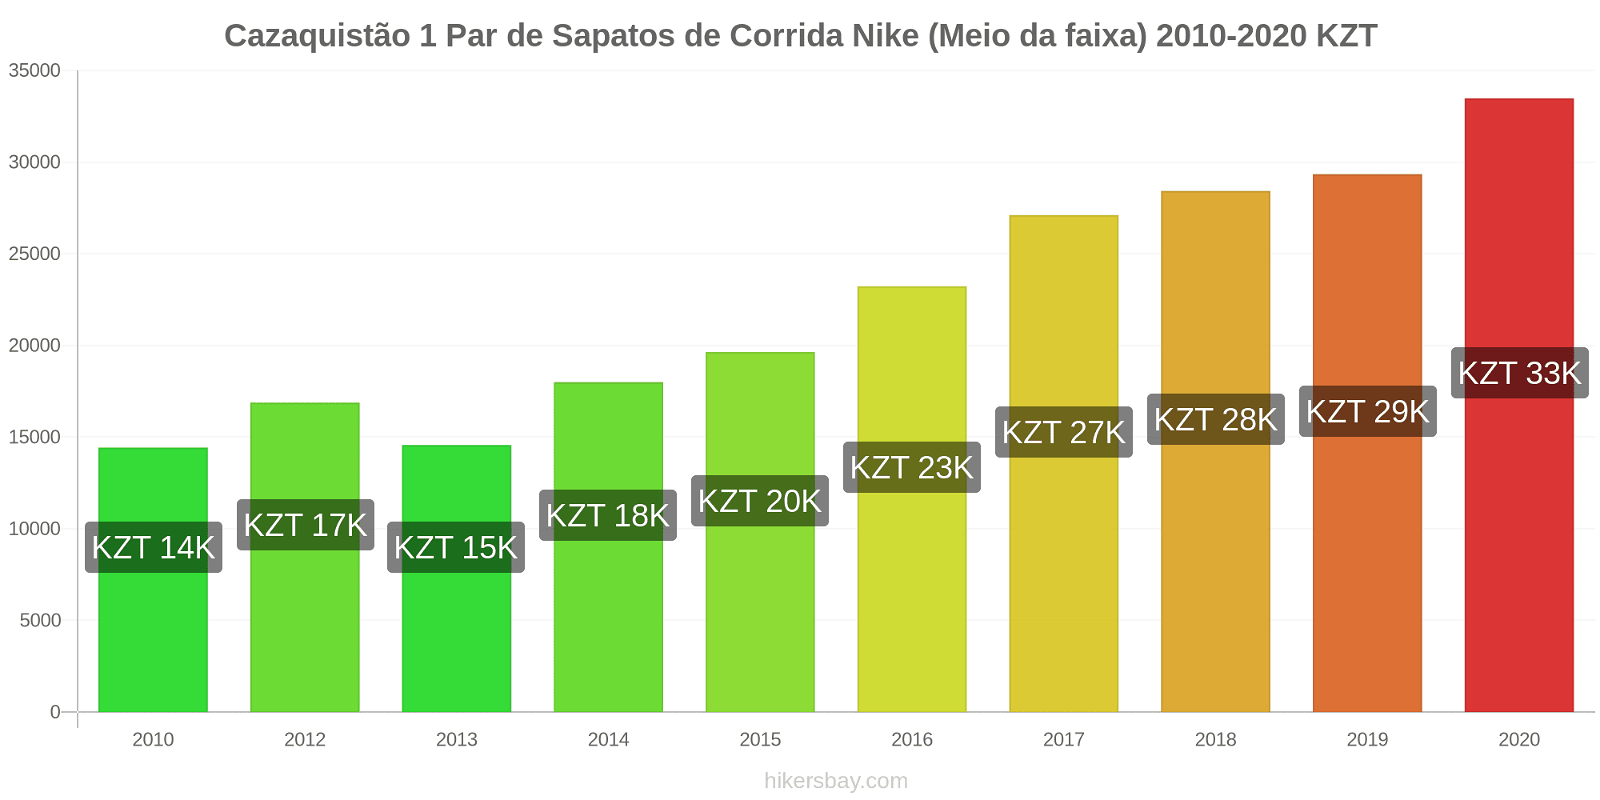 Cazaquistão variação de preço 1 par de tênis Nike (mid-range) hikersbay.com